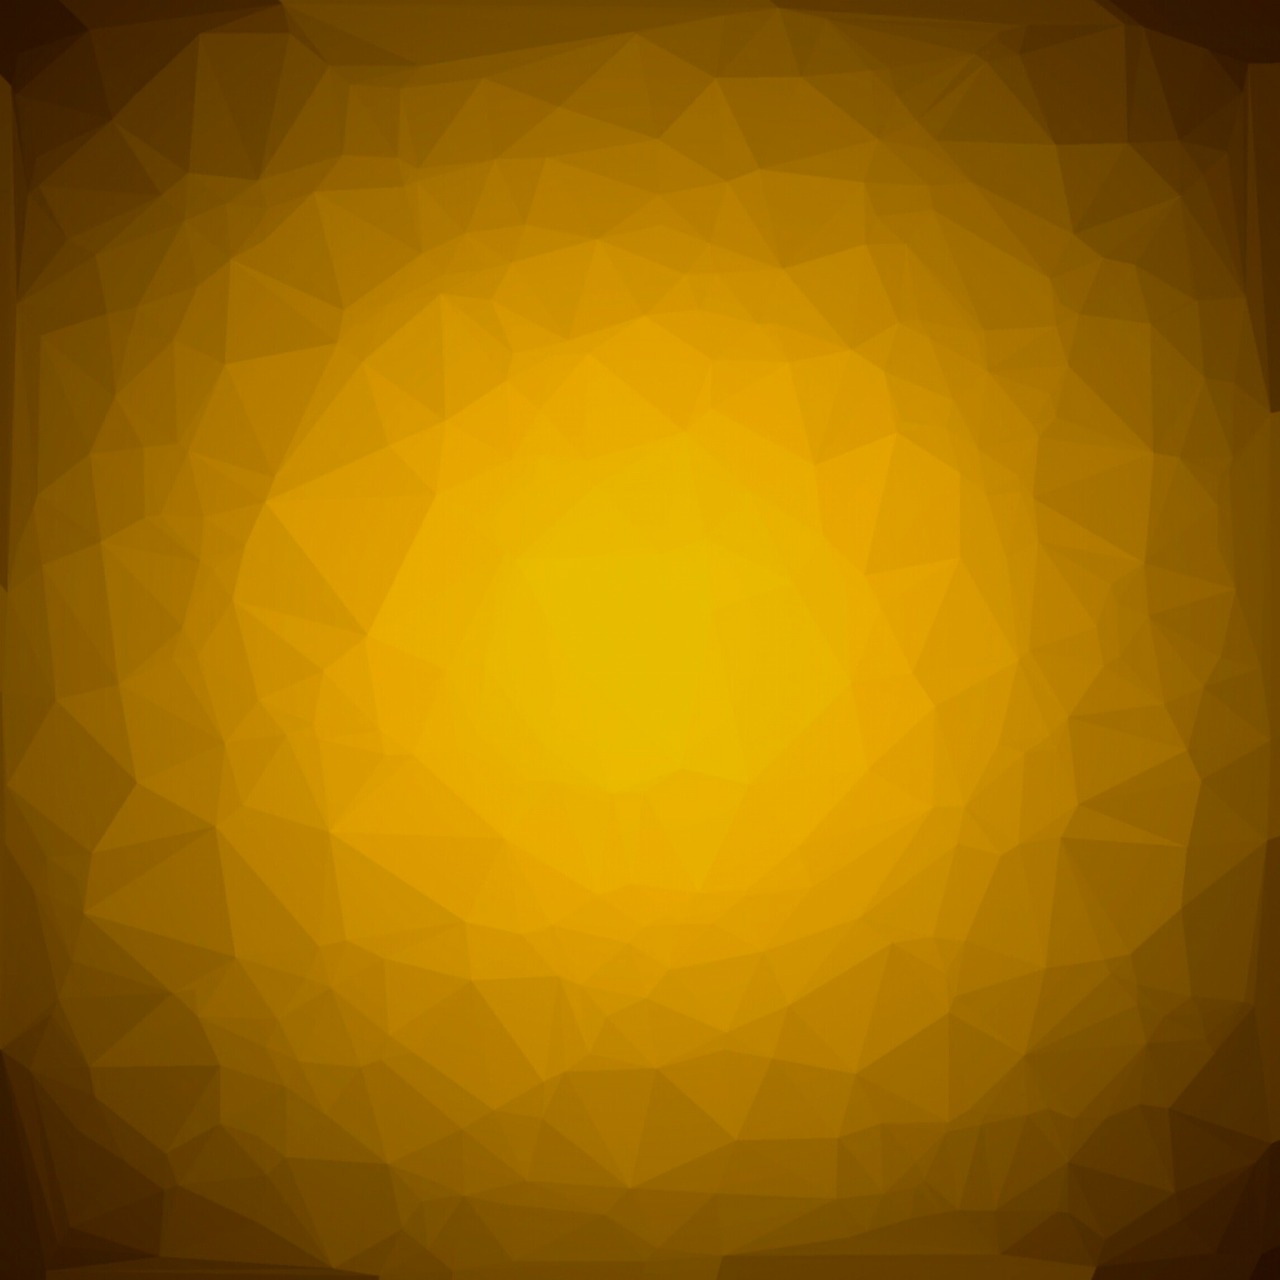 dark yellow gradient background